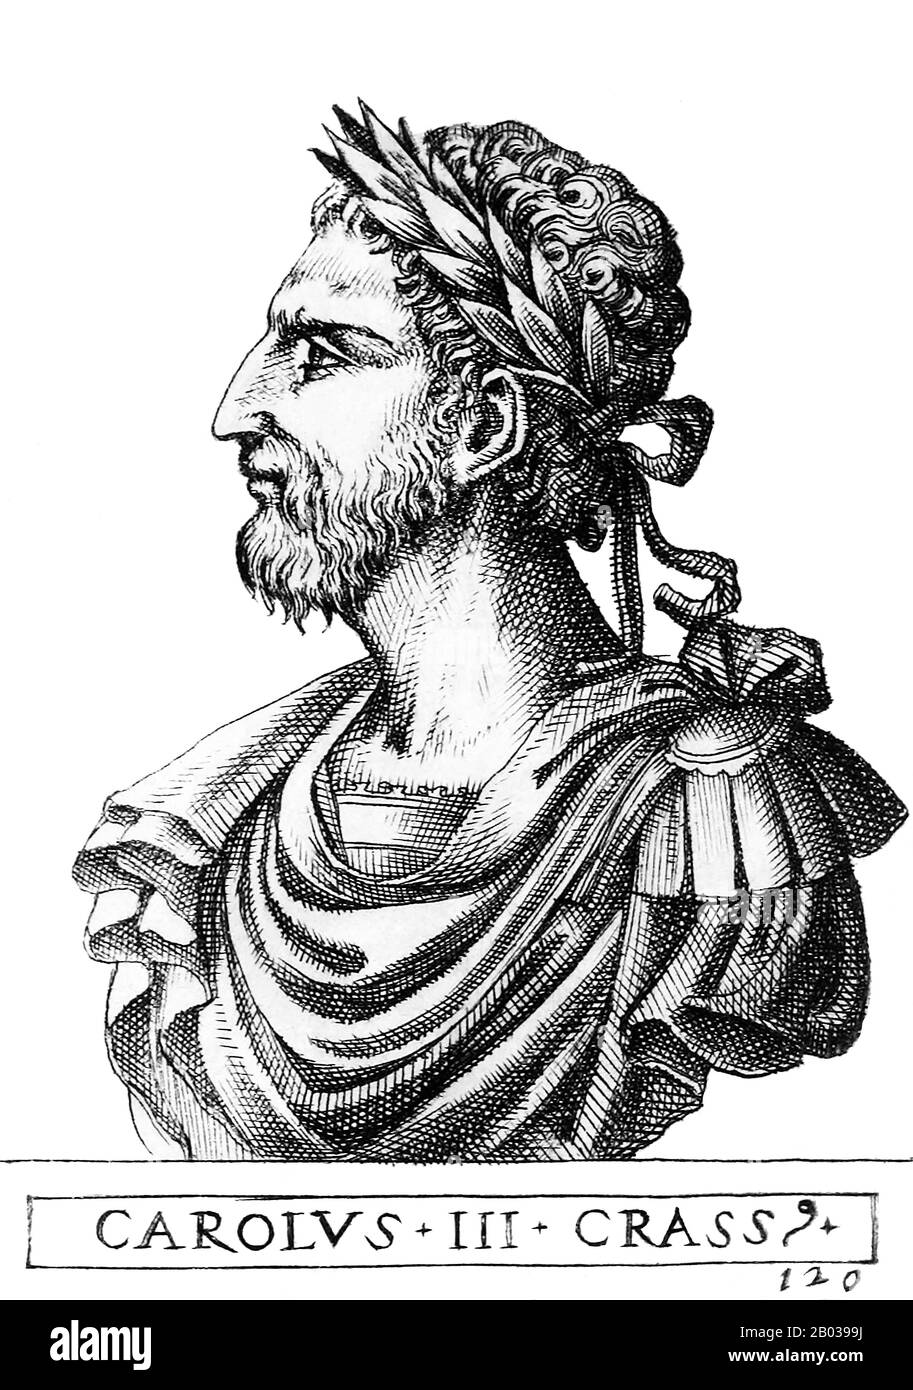 Carlo III (839-888), più comunemente conosciuto come Carlo Il Grasso, era il figlio più giovane di Luigi il tedesco, re di Francia orientale, e pronipote dell'imperatore Carlo Magno. Dopo la divisione dell'Francia orientale tra i figli di Luigi, Carlo ereditò Alamannia nel 876, ma presto ereditò il regno d'Italia nel 876 dopo che il fratello maggiore Carloman di Baviera abdicò. Carlo fu infine incoronato come Sacro Romano imperatore nel 881, e succedette a suo fratello Luigi Il Giovane come re di Sassonia e Baviera un anno dopo, riunendo il Regno di Francia Orientale. Fu costretto a trattare Con la Grande Eea Foto Stock